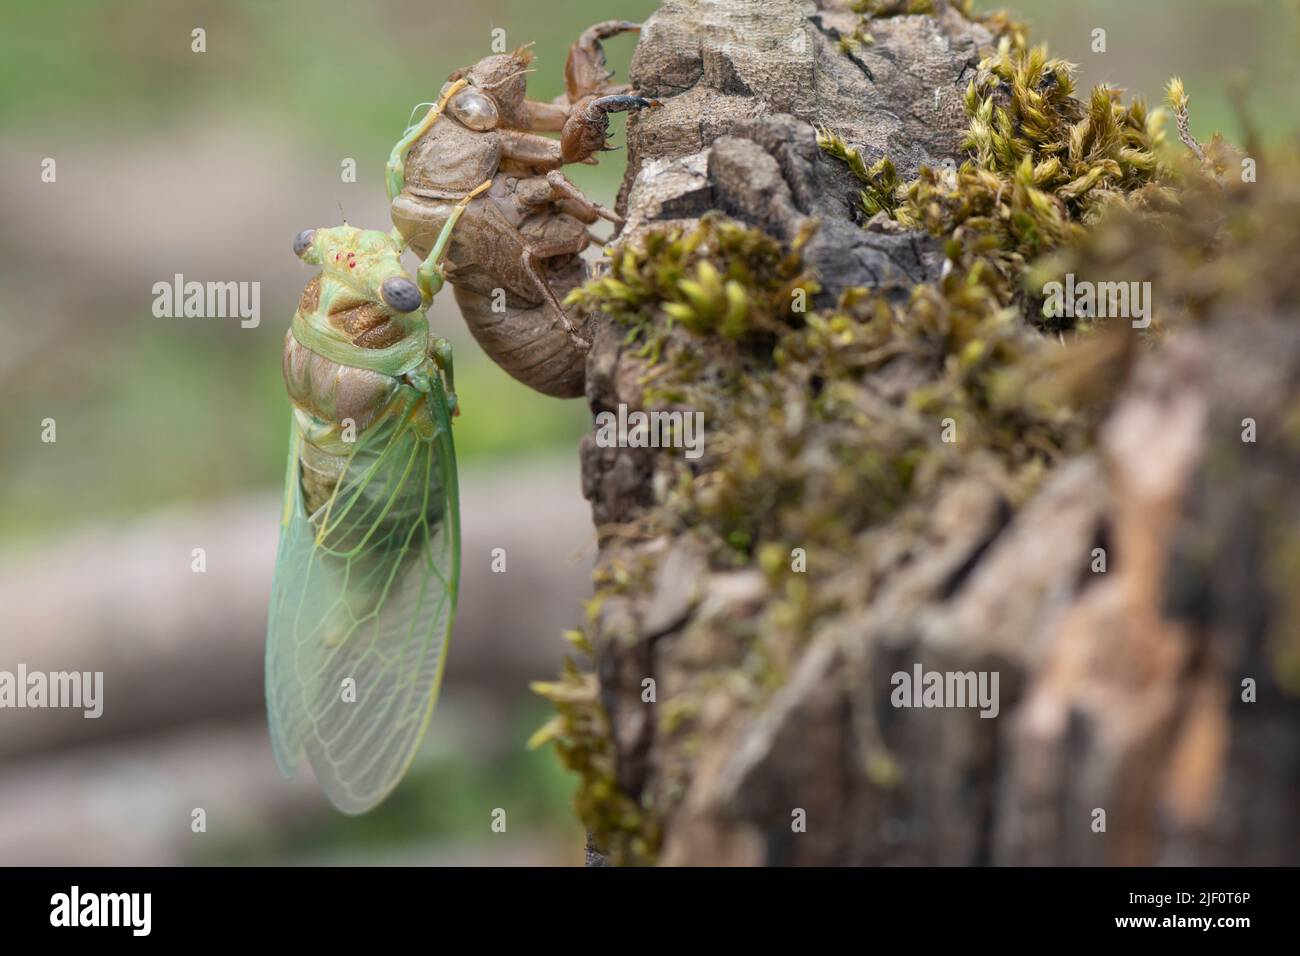 Makrobild einer neu entstandenen Zikade, Metamorphose einer Zikade im Frühling. Stockfoto